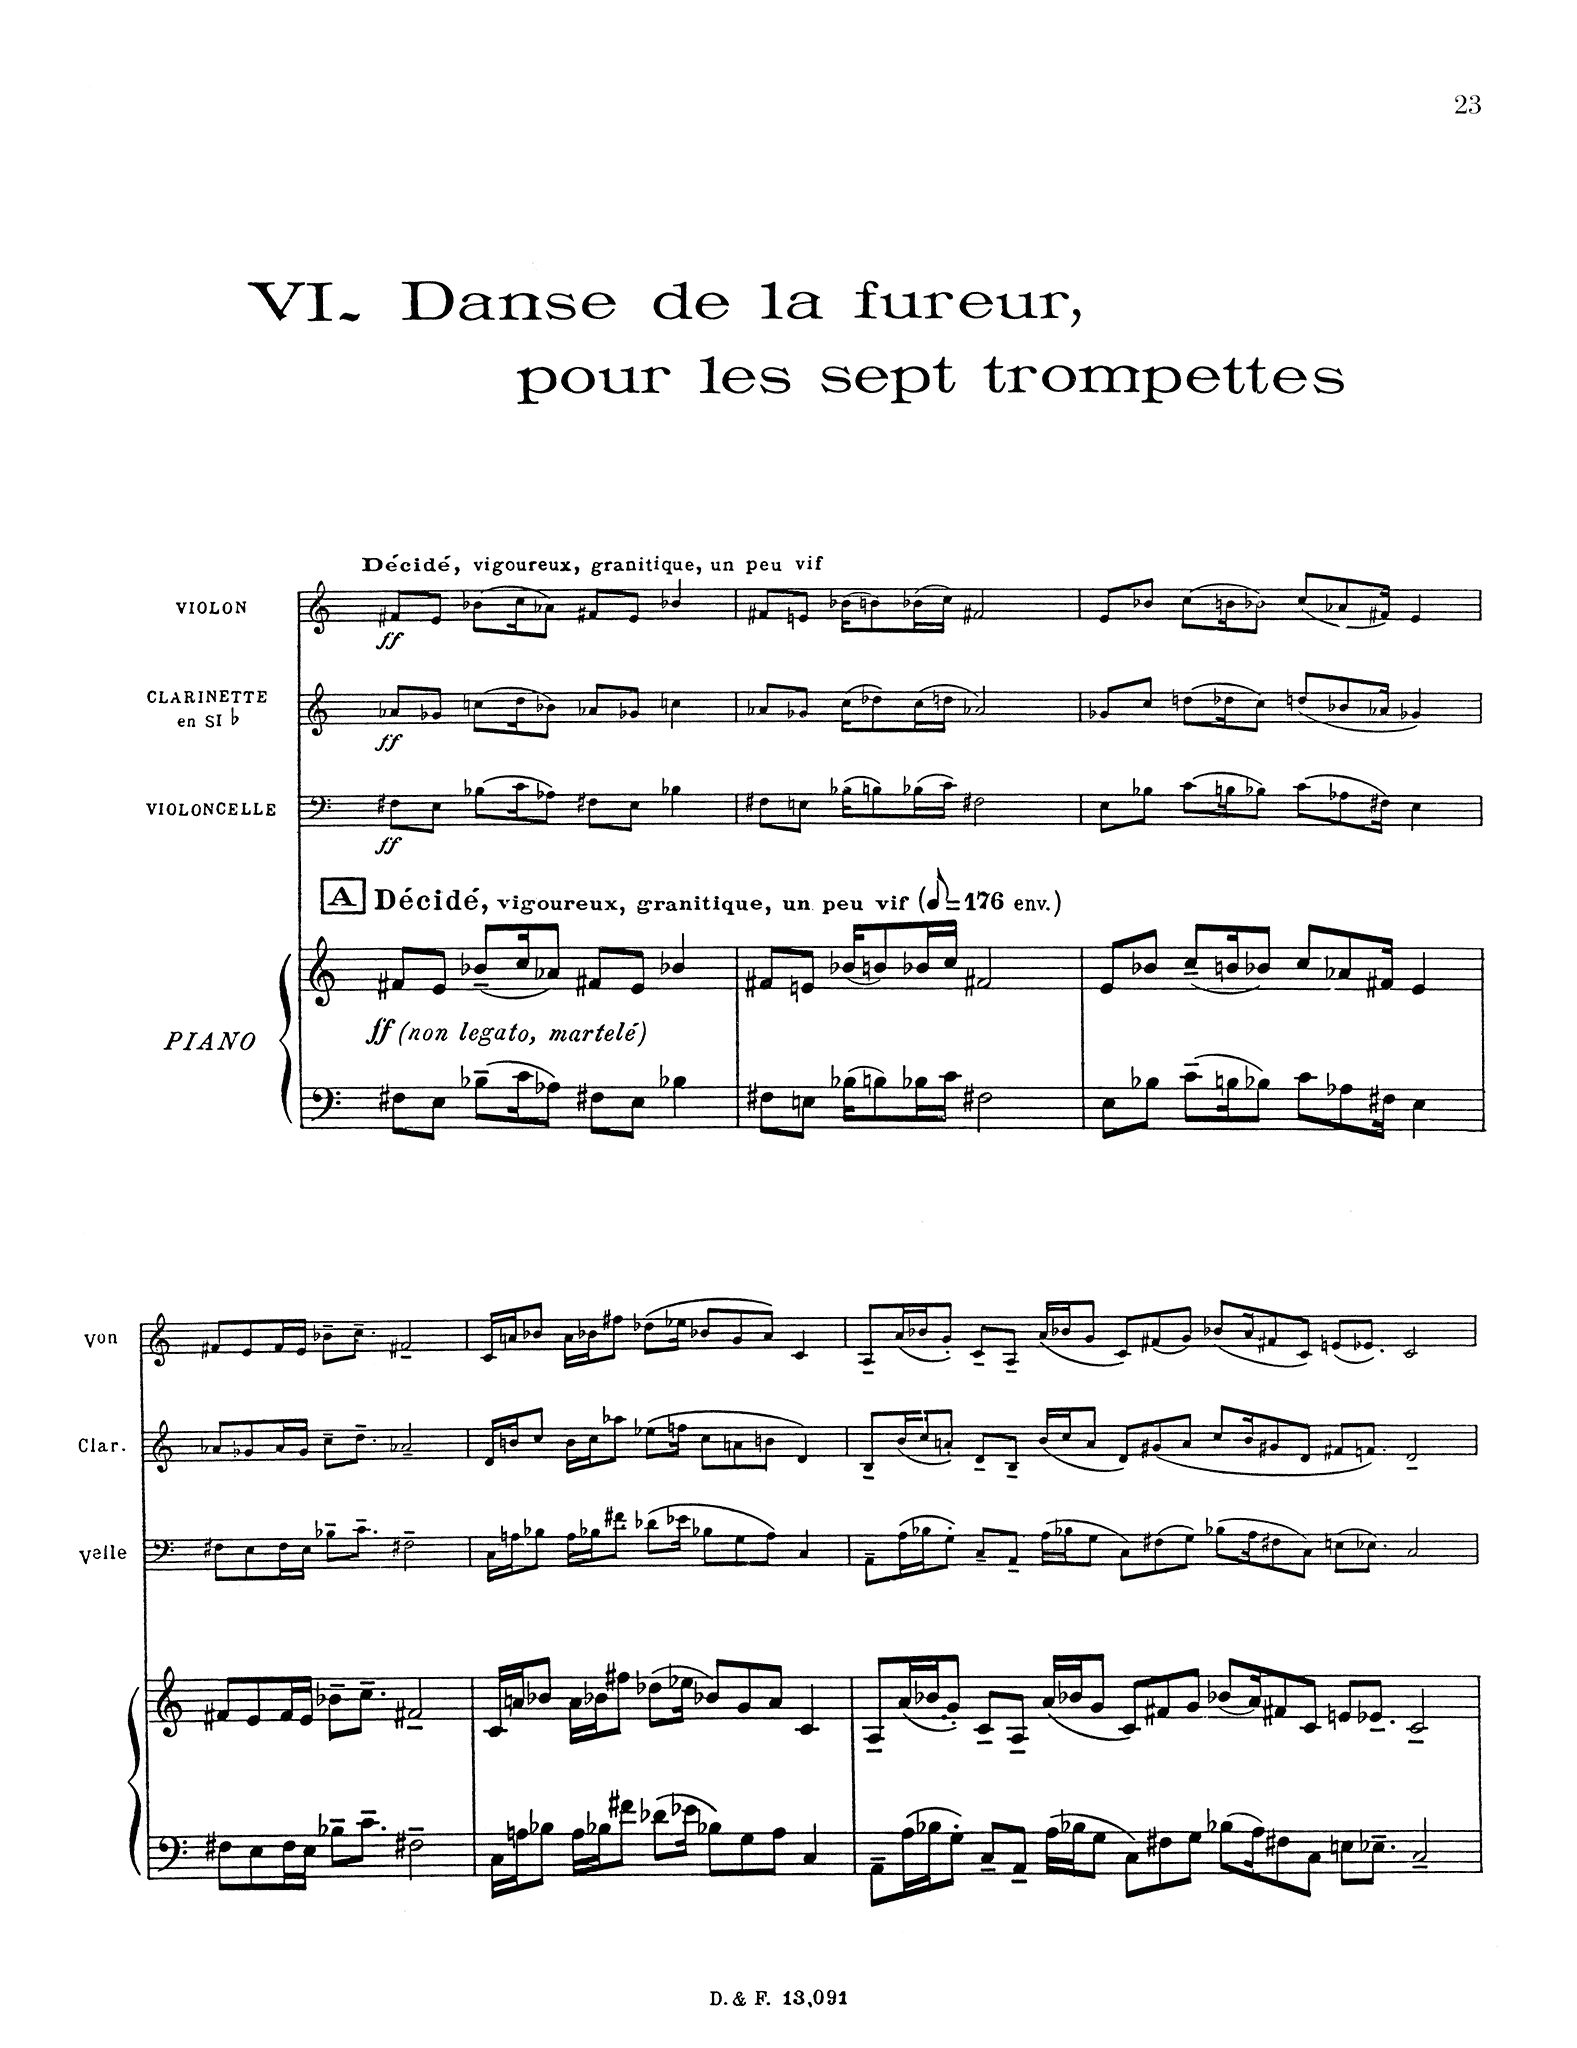 Messiaen Quatuor pour la fin du temps - Movement 6